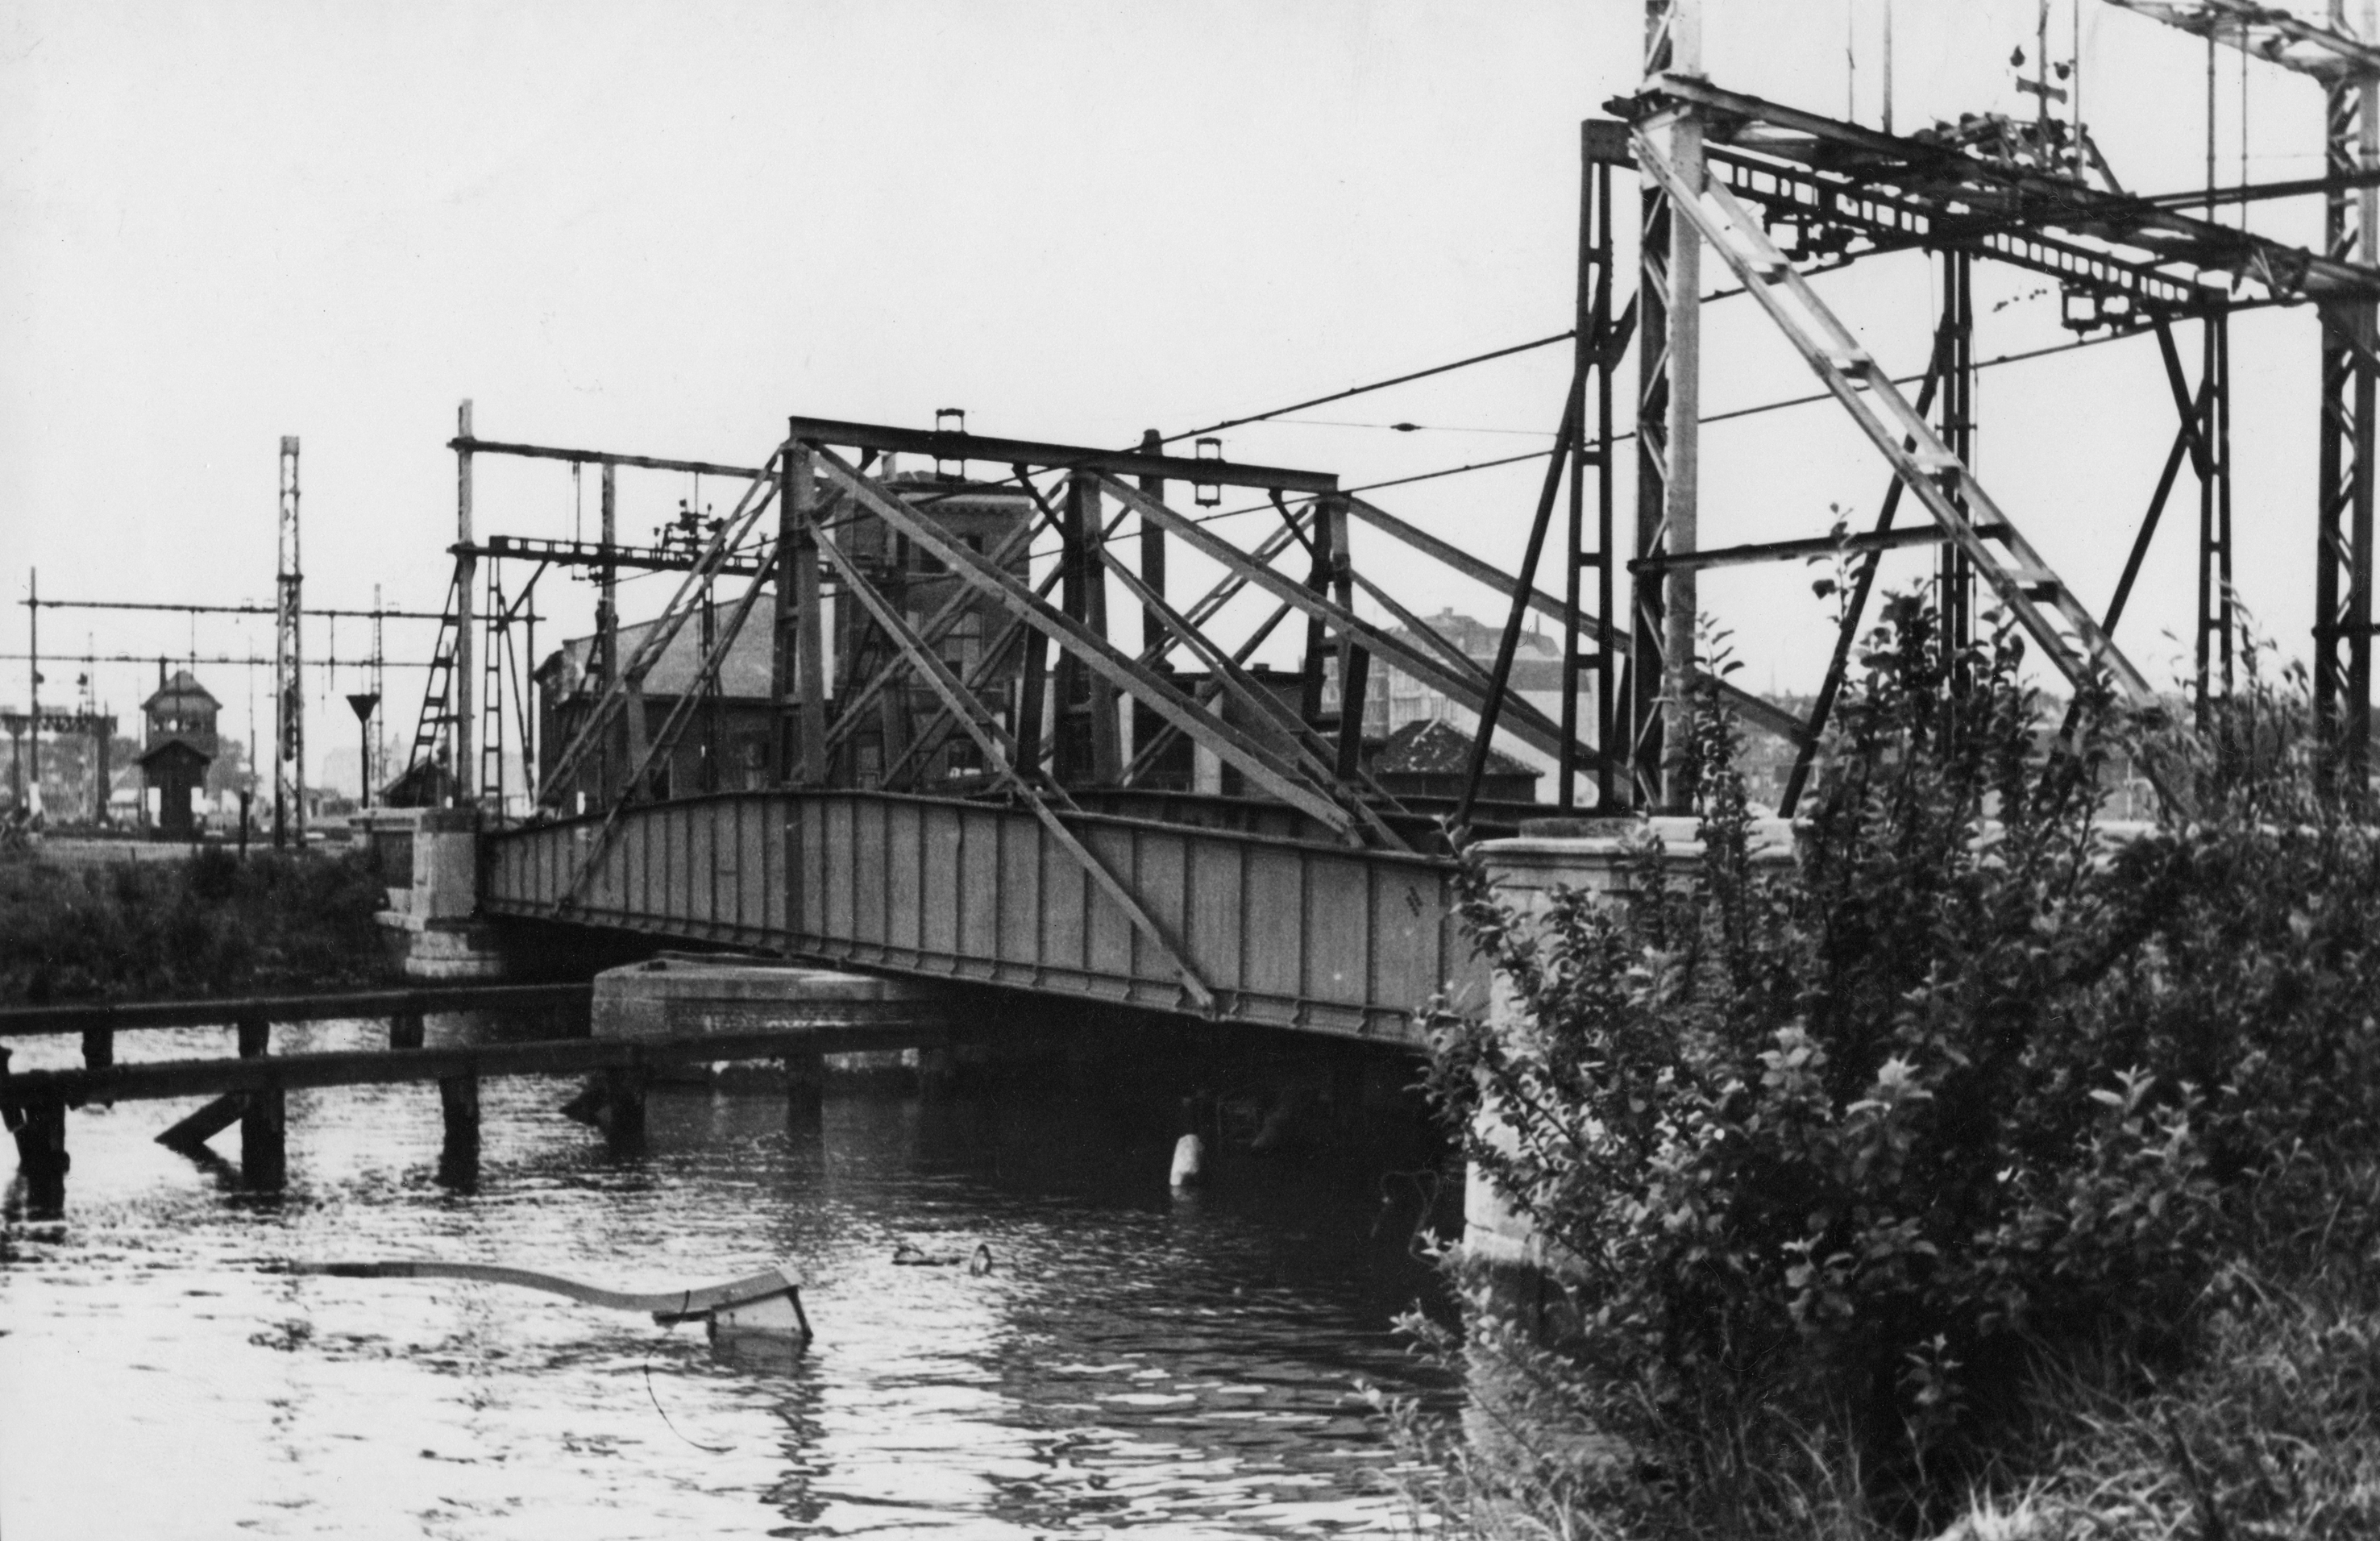 Spoorbrug bij Rotterdam met in het water gezonken binnenvaartschip, ter versperring van de haven